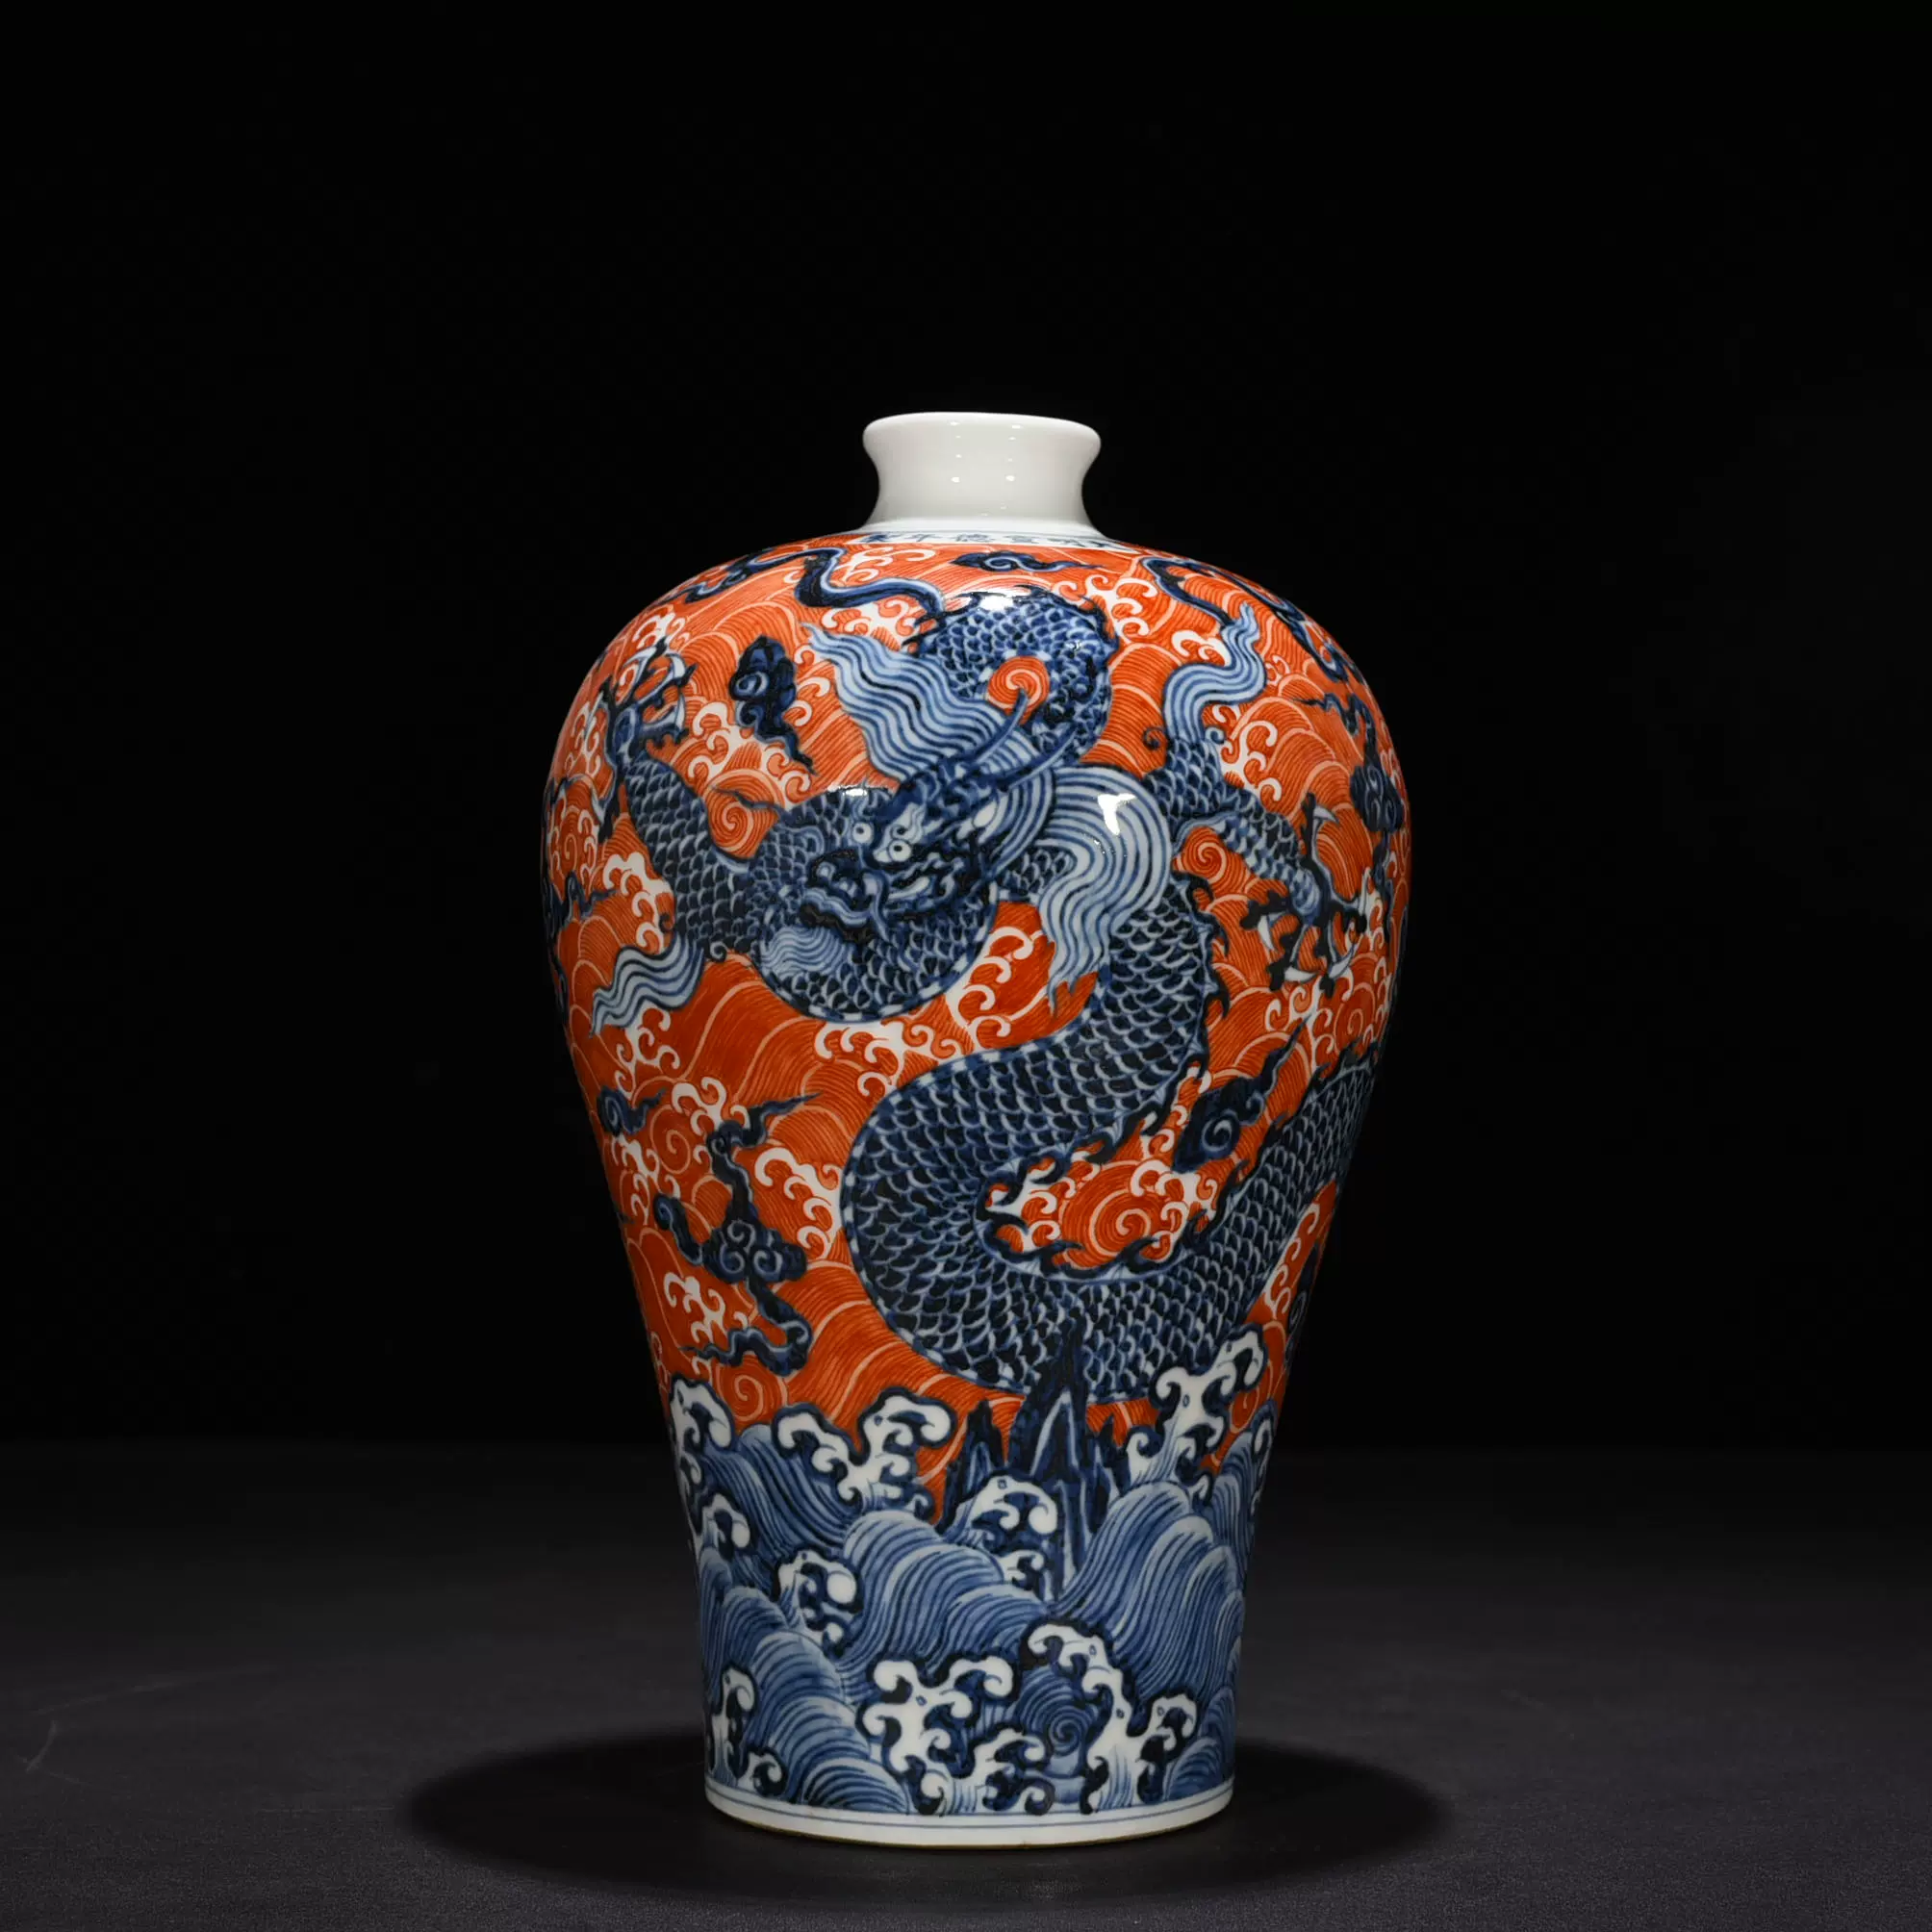 明宣德青花矾红海水龙纹梅瓶古玩古董古瓷器旧货收藏-Taobao Singapore